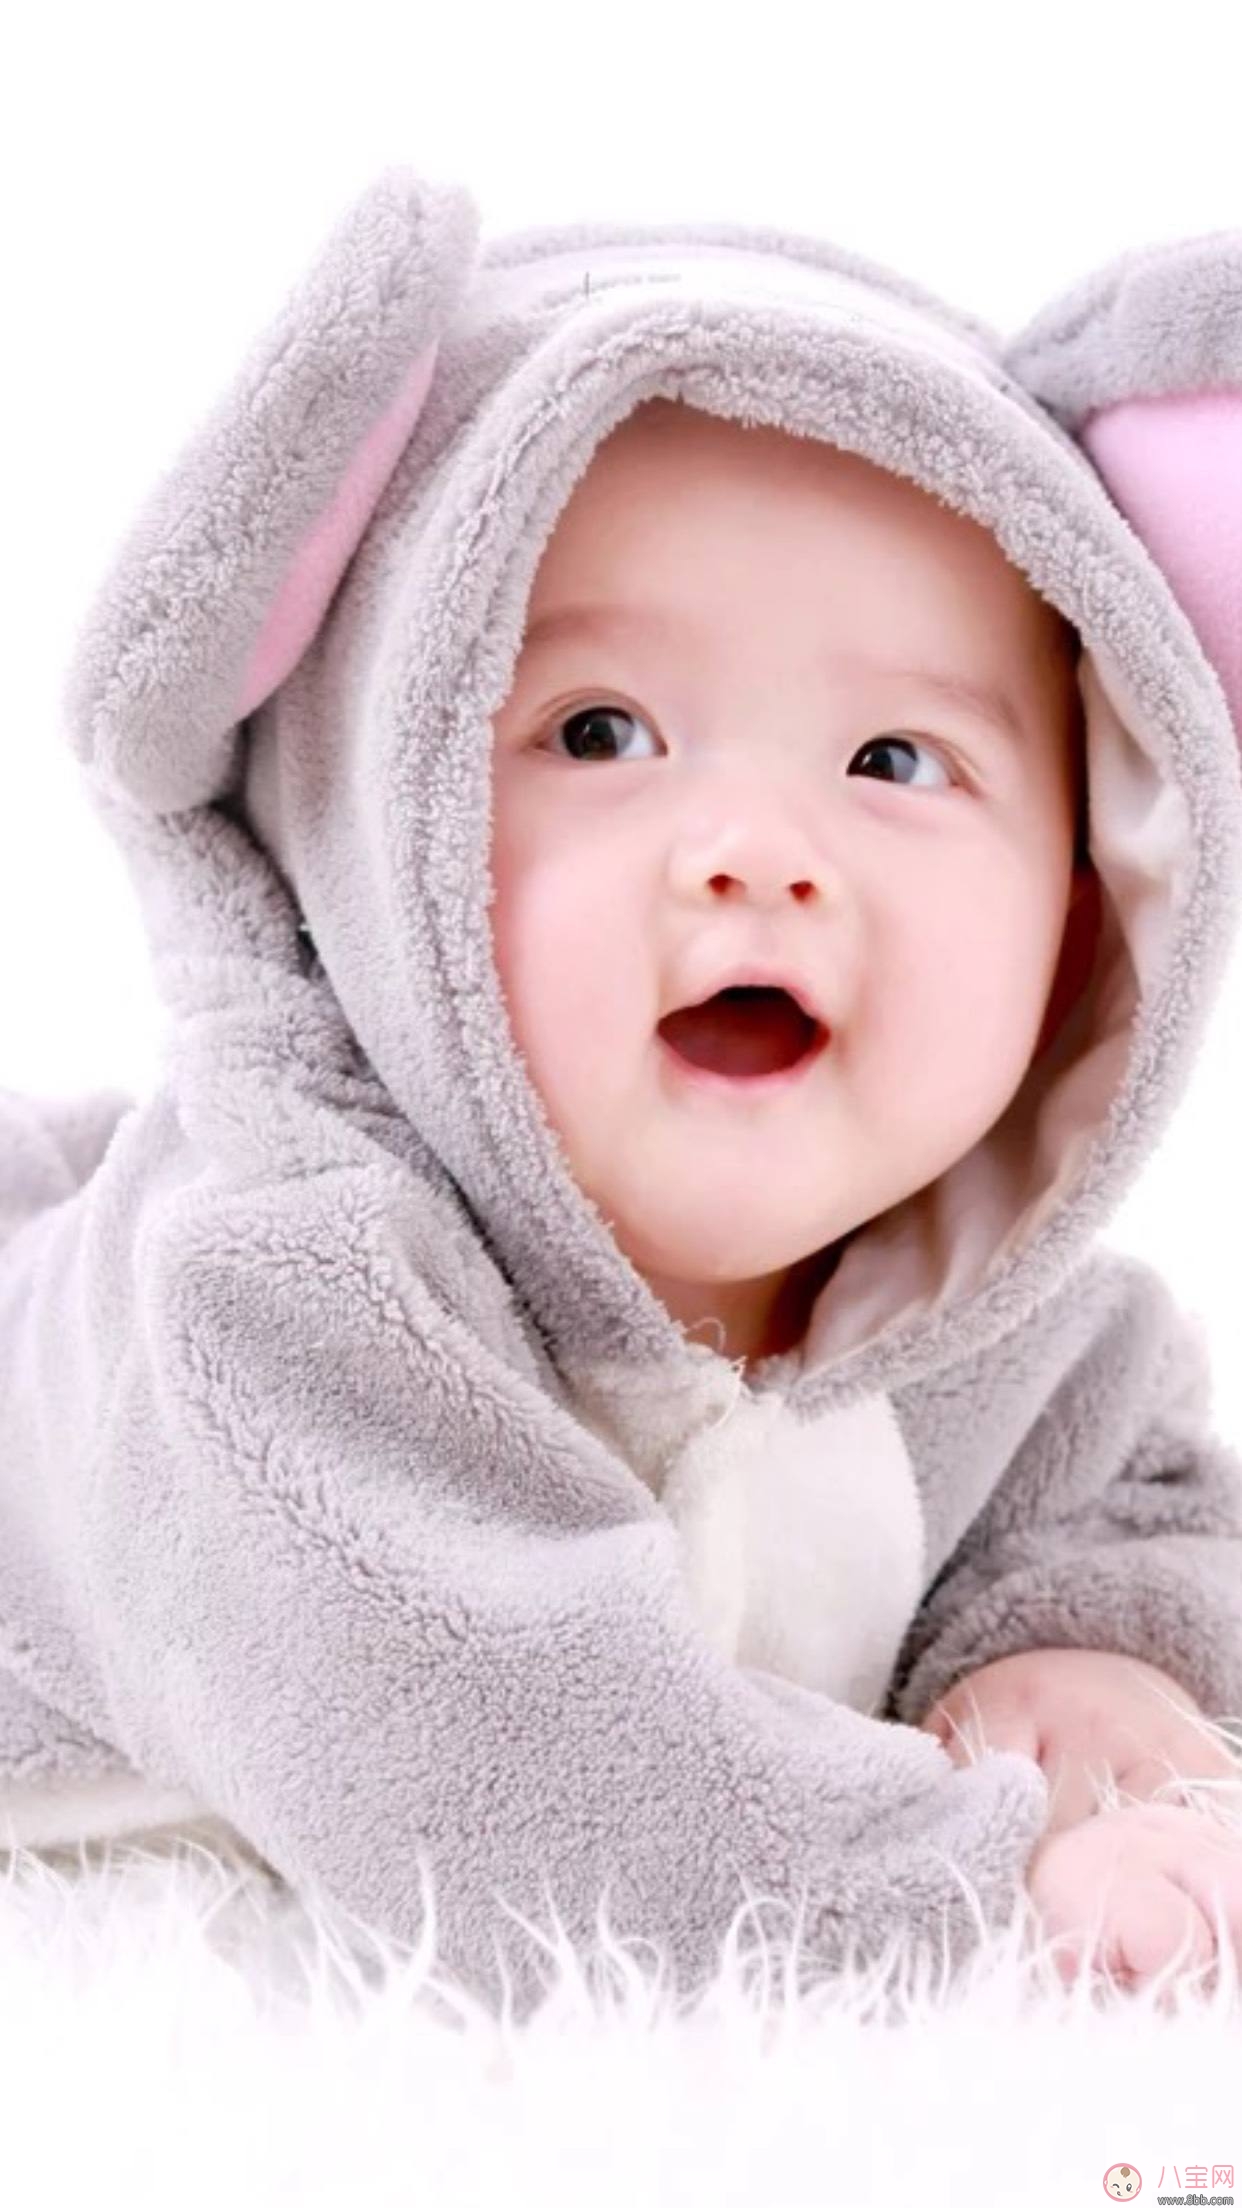 如何知道宝宝肚子胀气 怎么帮助宝宝改善胀气